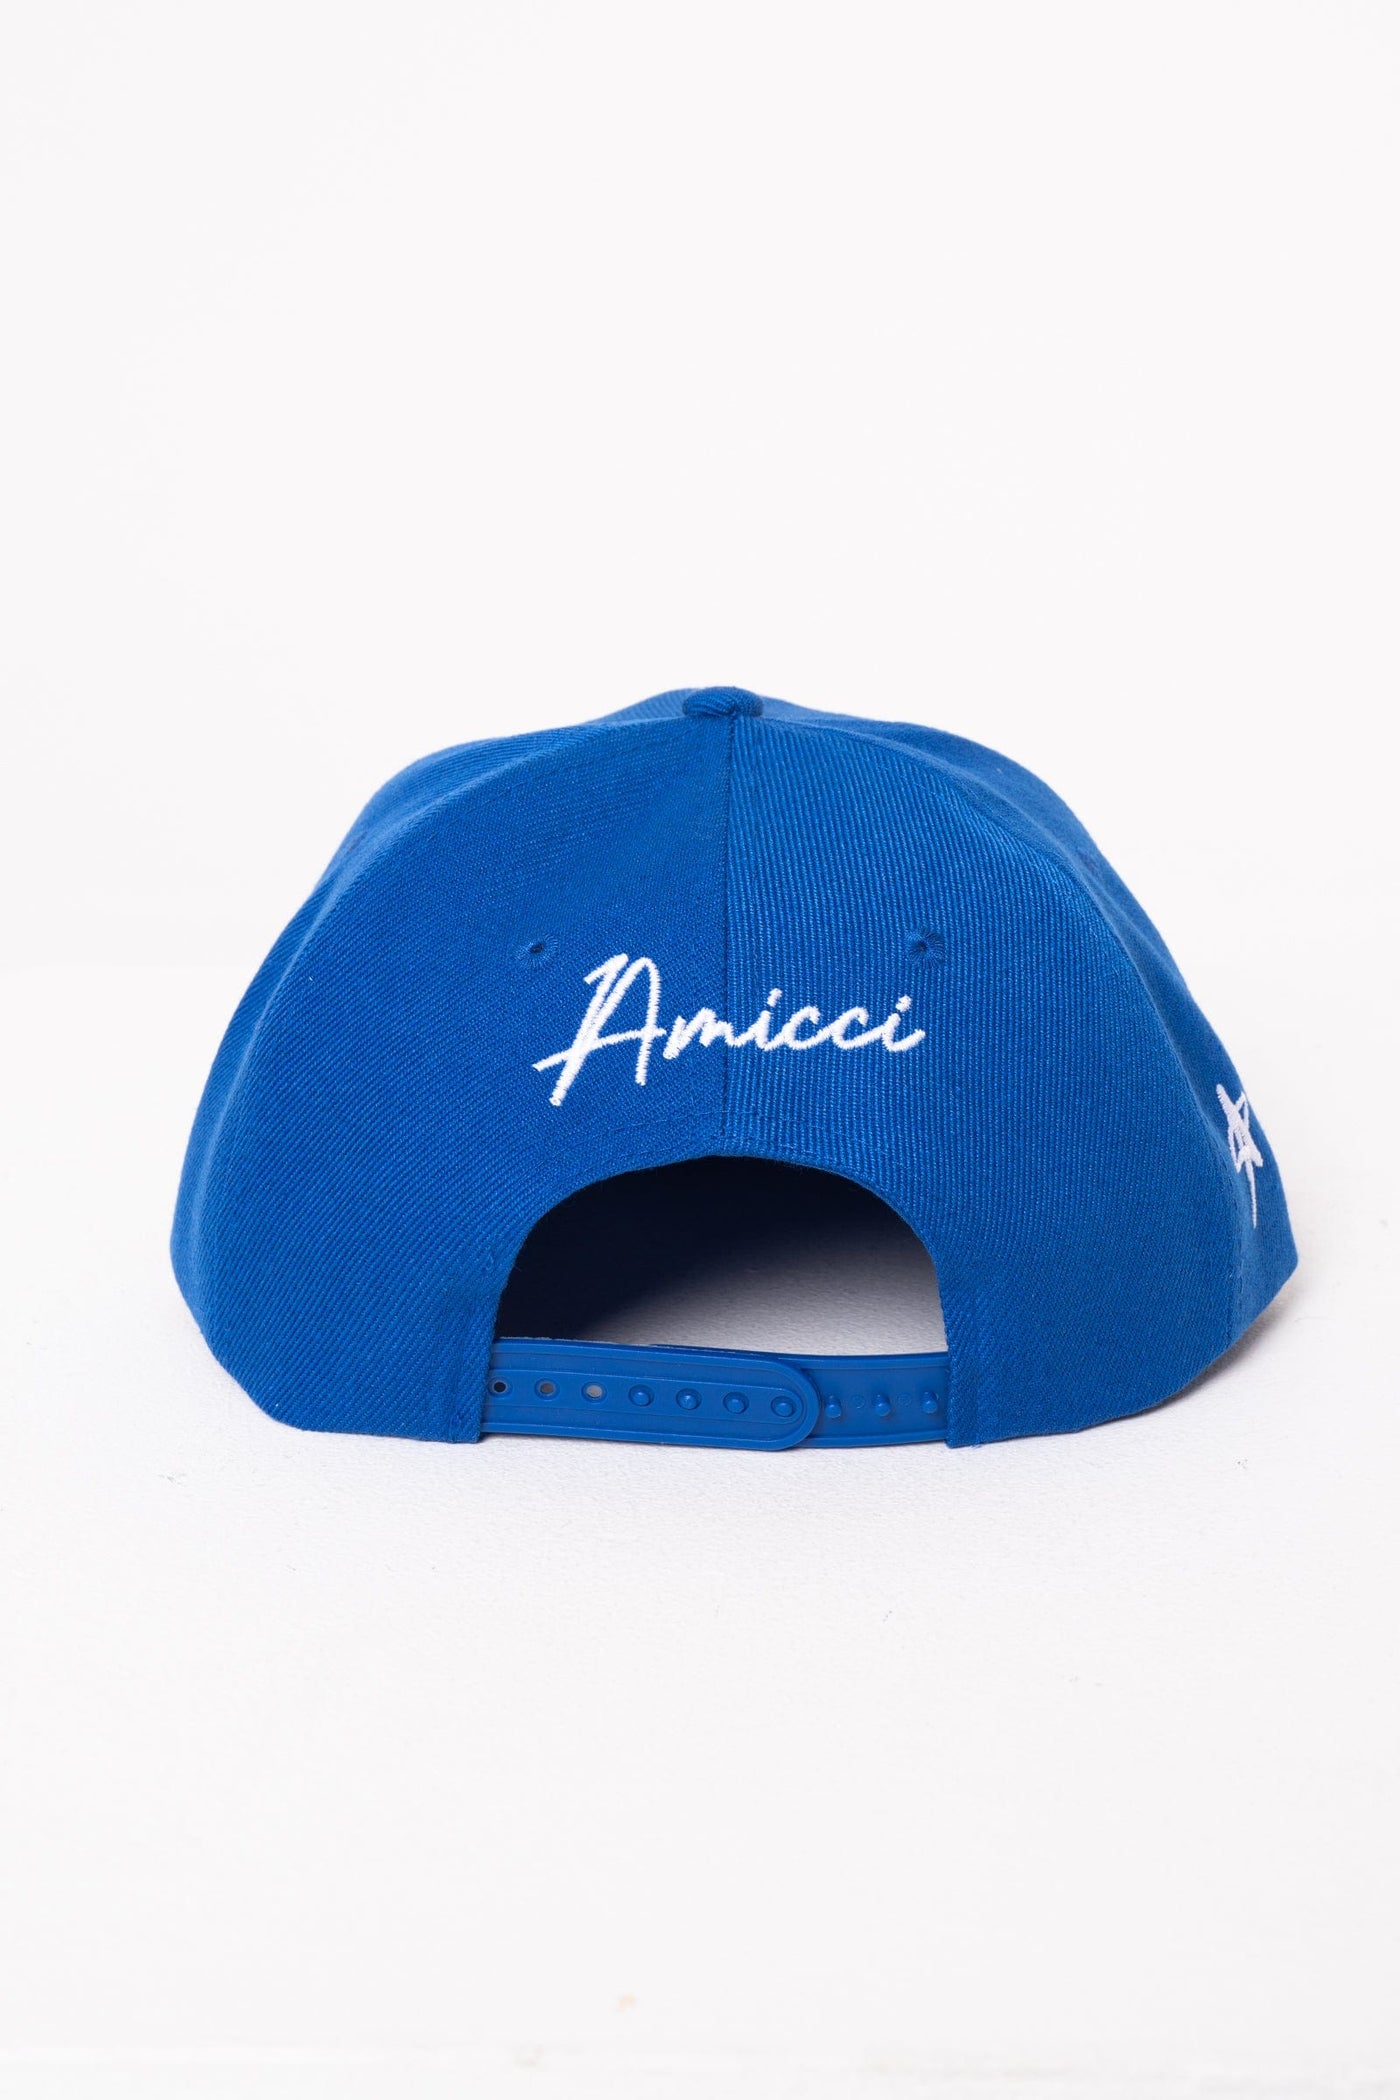 Amicci Cap One size Premium Trucker Cap Blue